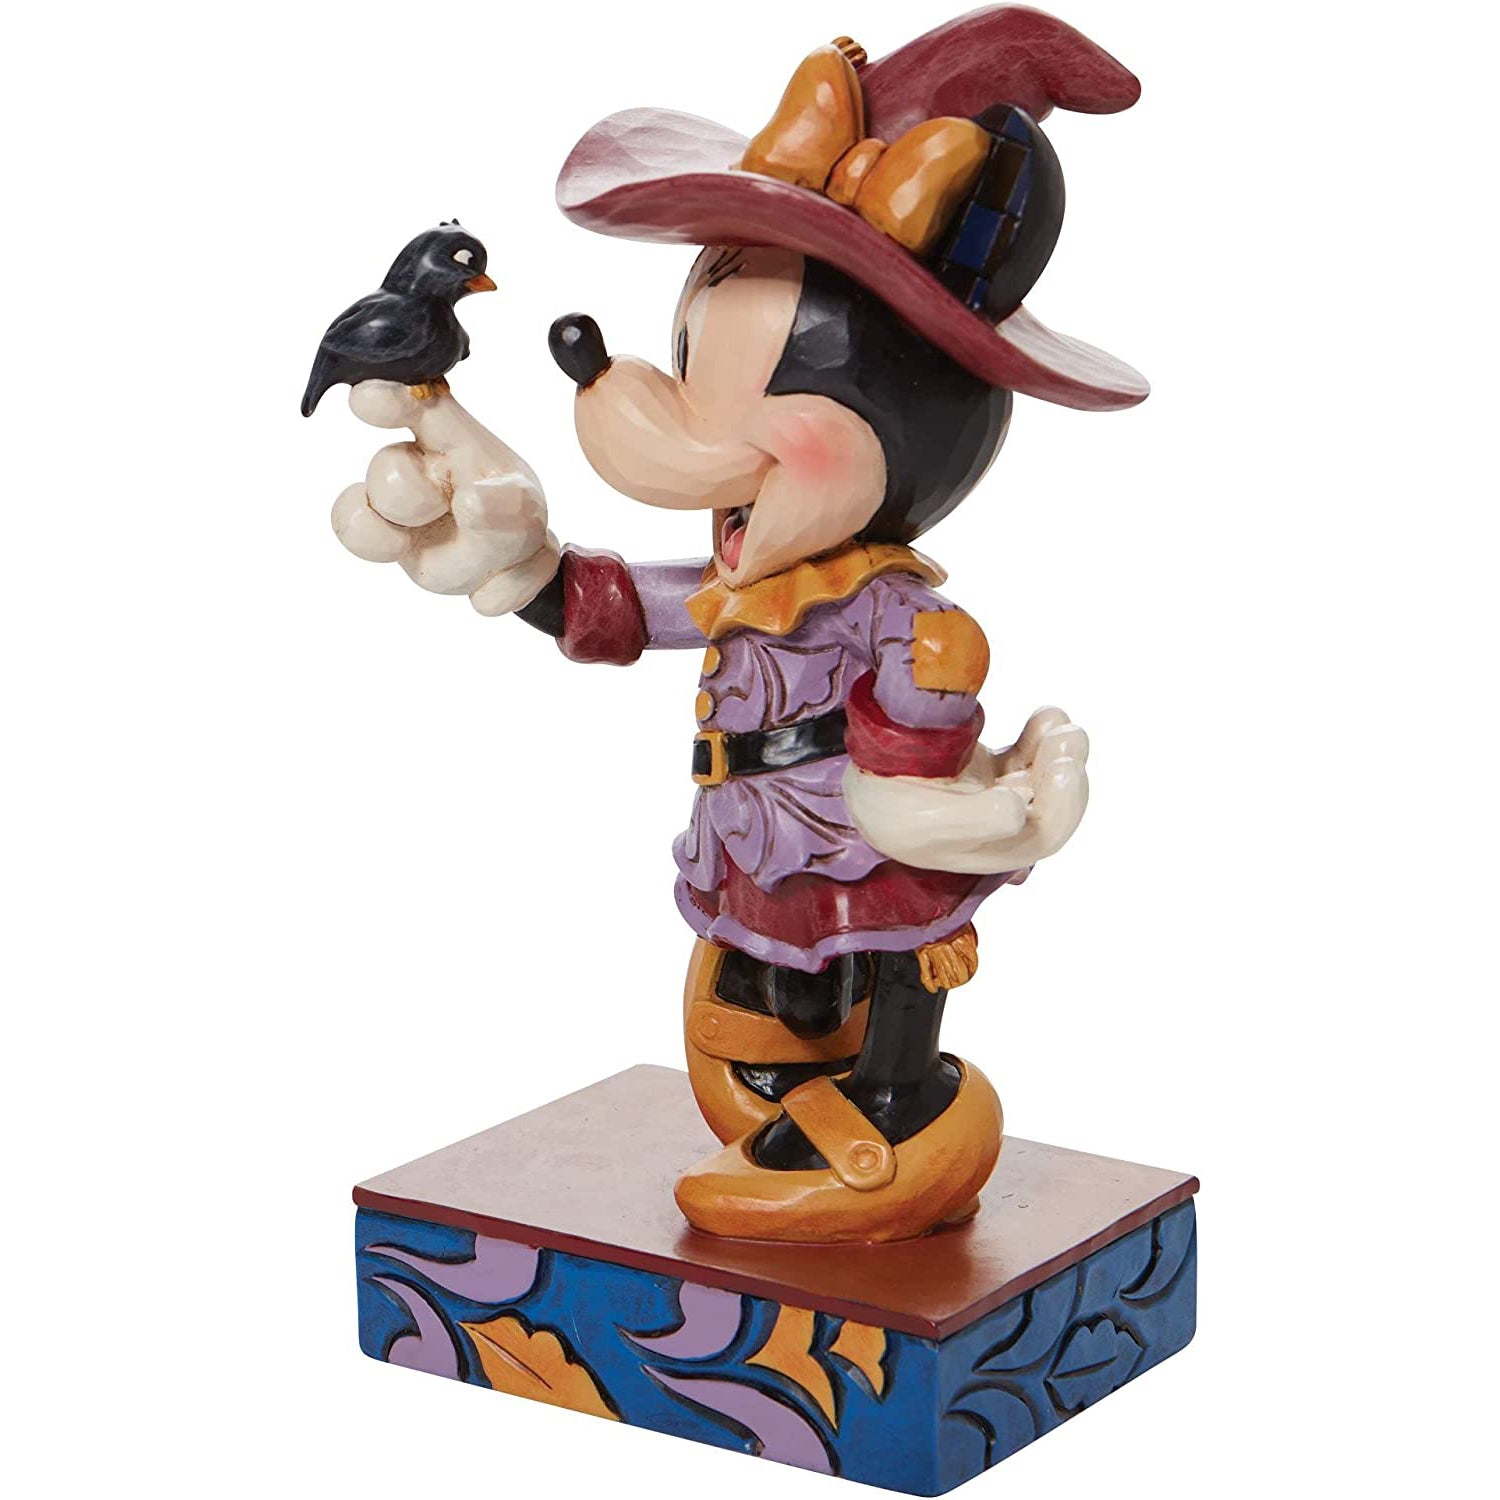 Minnie-Mouse-Vogelscheuche-Figur-Disney-by-Jim-Shore-Berlindeluxe-maus-vogel-hut-seite